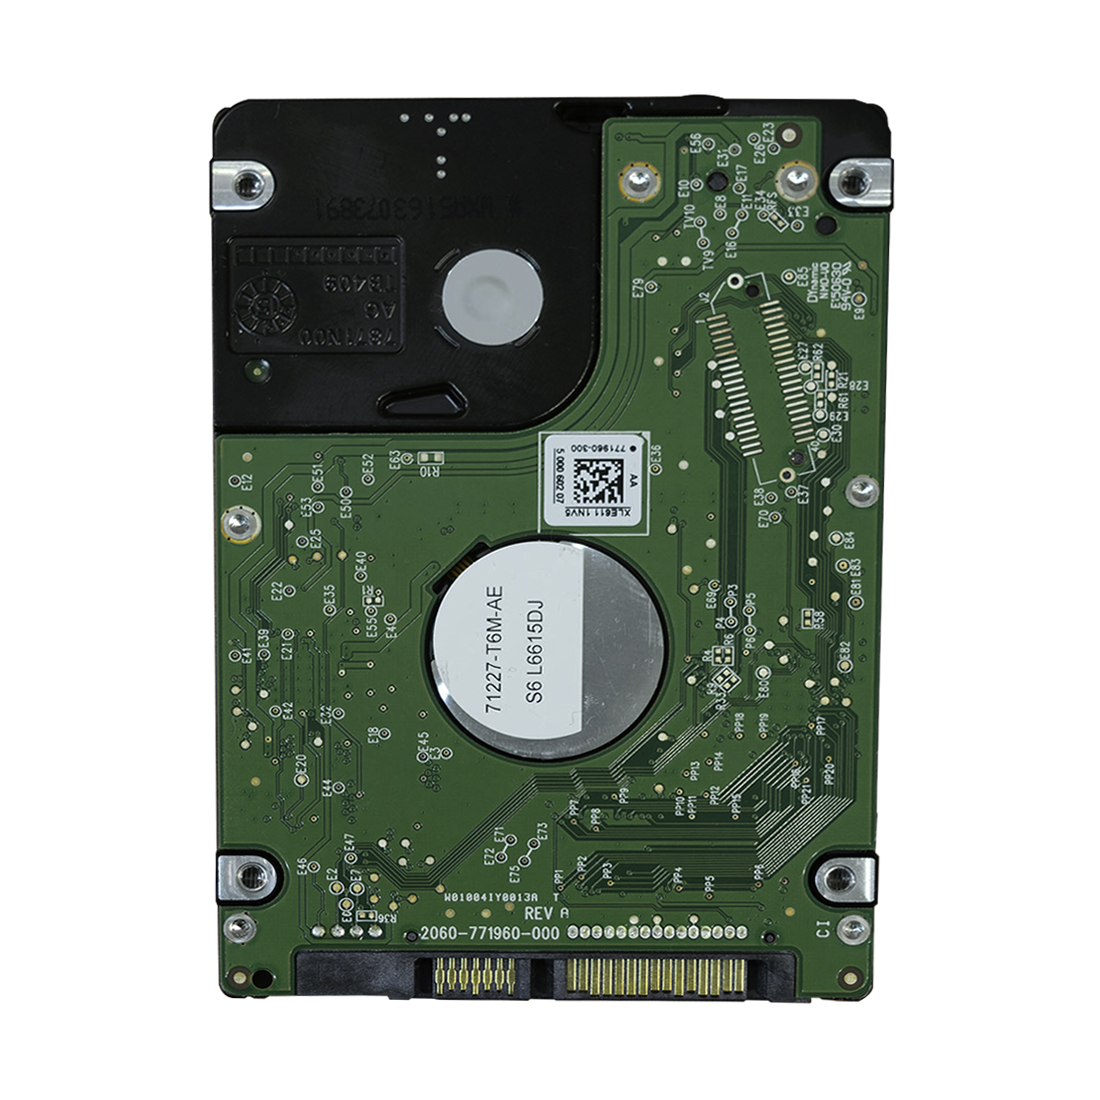 картинка Жесткий диск WD Blue™ WD5000LPCX 500ГБ 2,5" 5400RPM 16MB (SATA III) Mobile от магазина itmag.kz